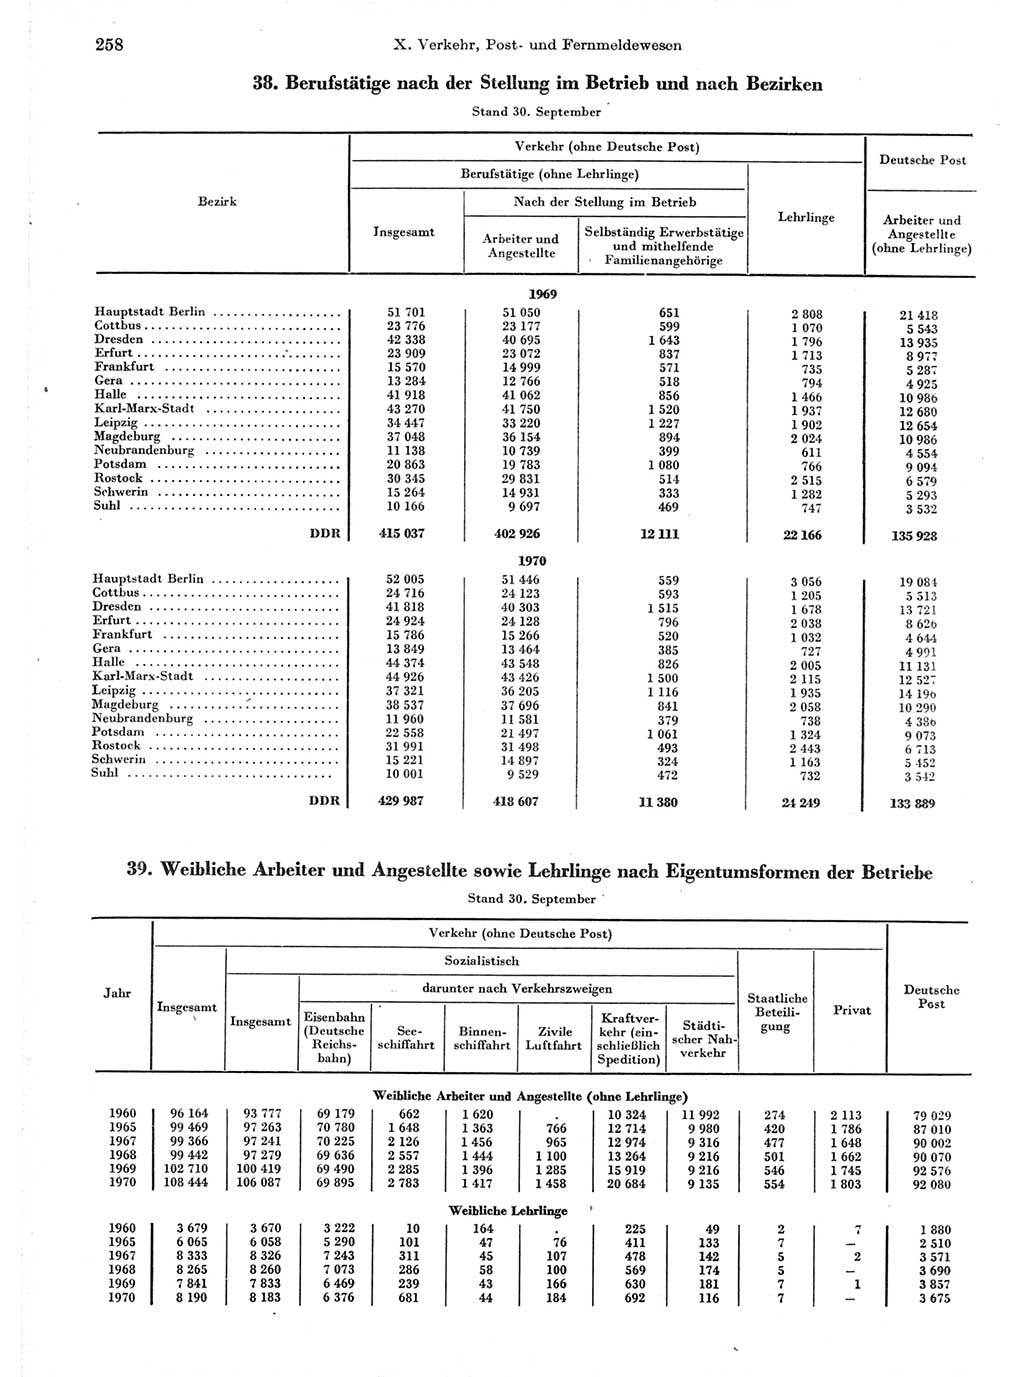 Statistisches Jahrbuch der Deutschen Demokratischen Republik (DDR) 1971, Seite 258 (Stat. Jb. DDR 1971, S. 258)